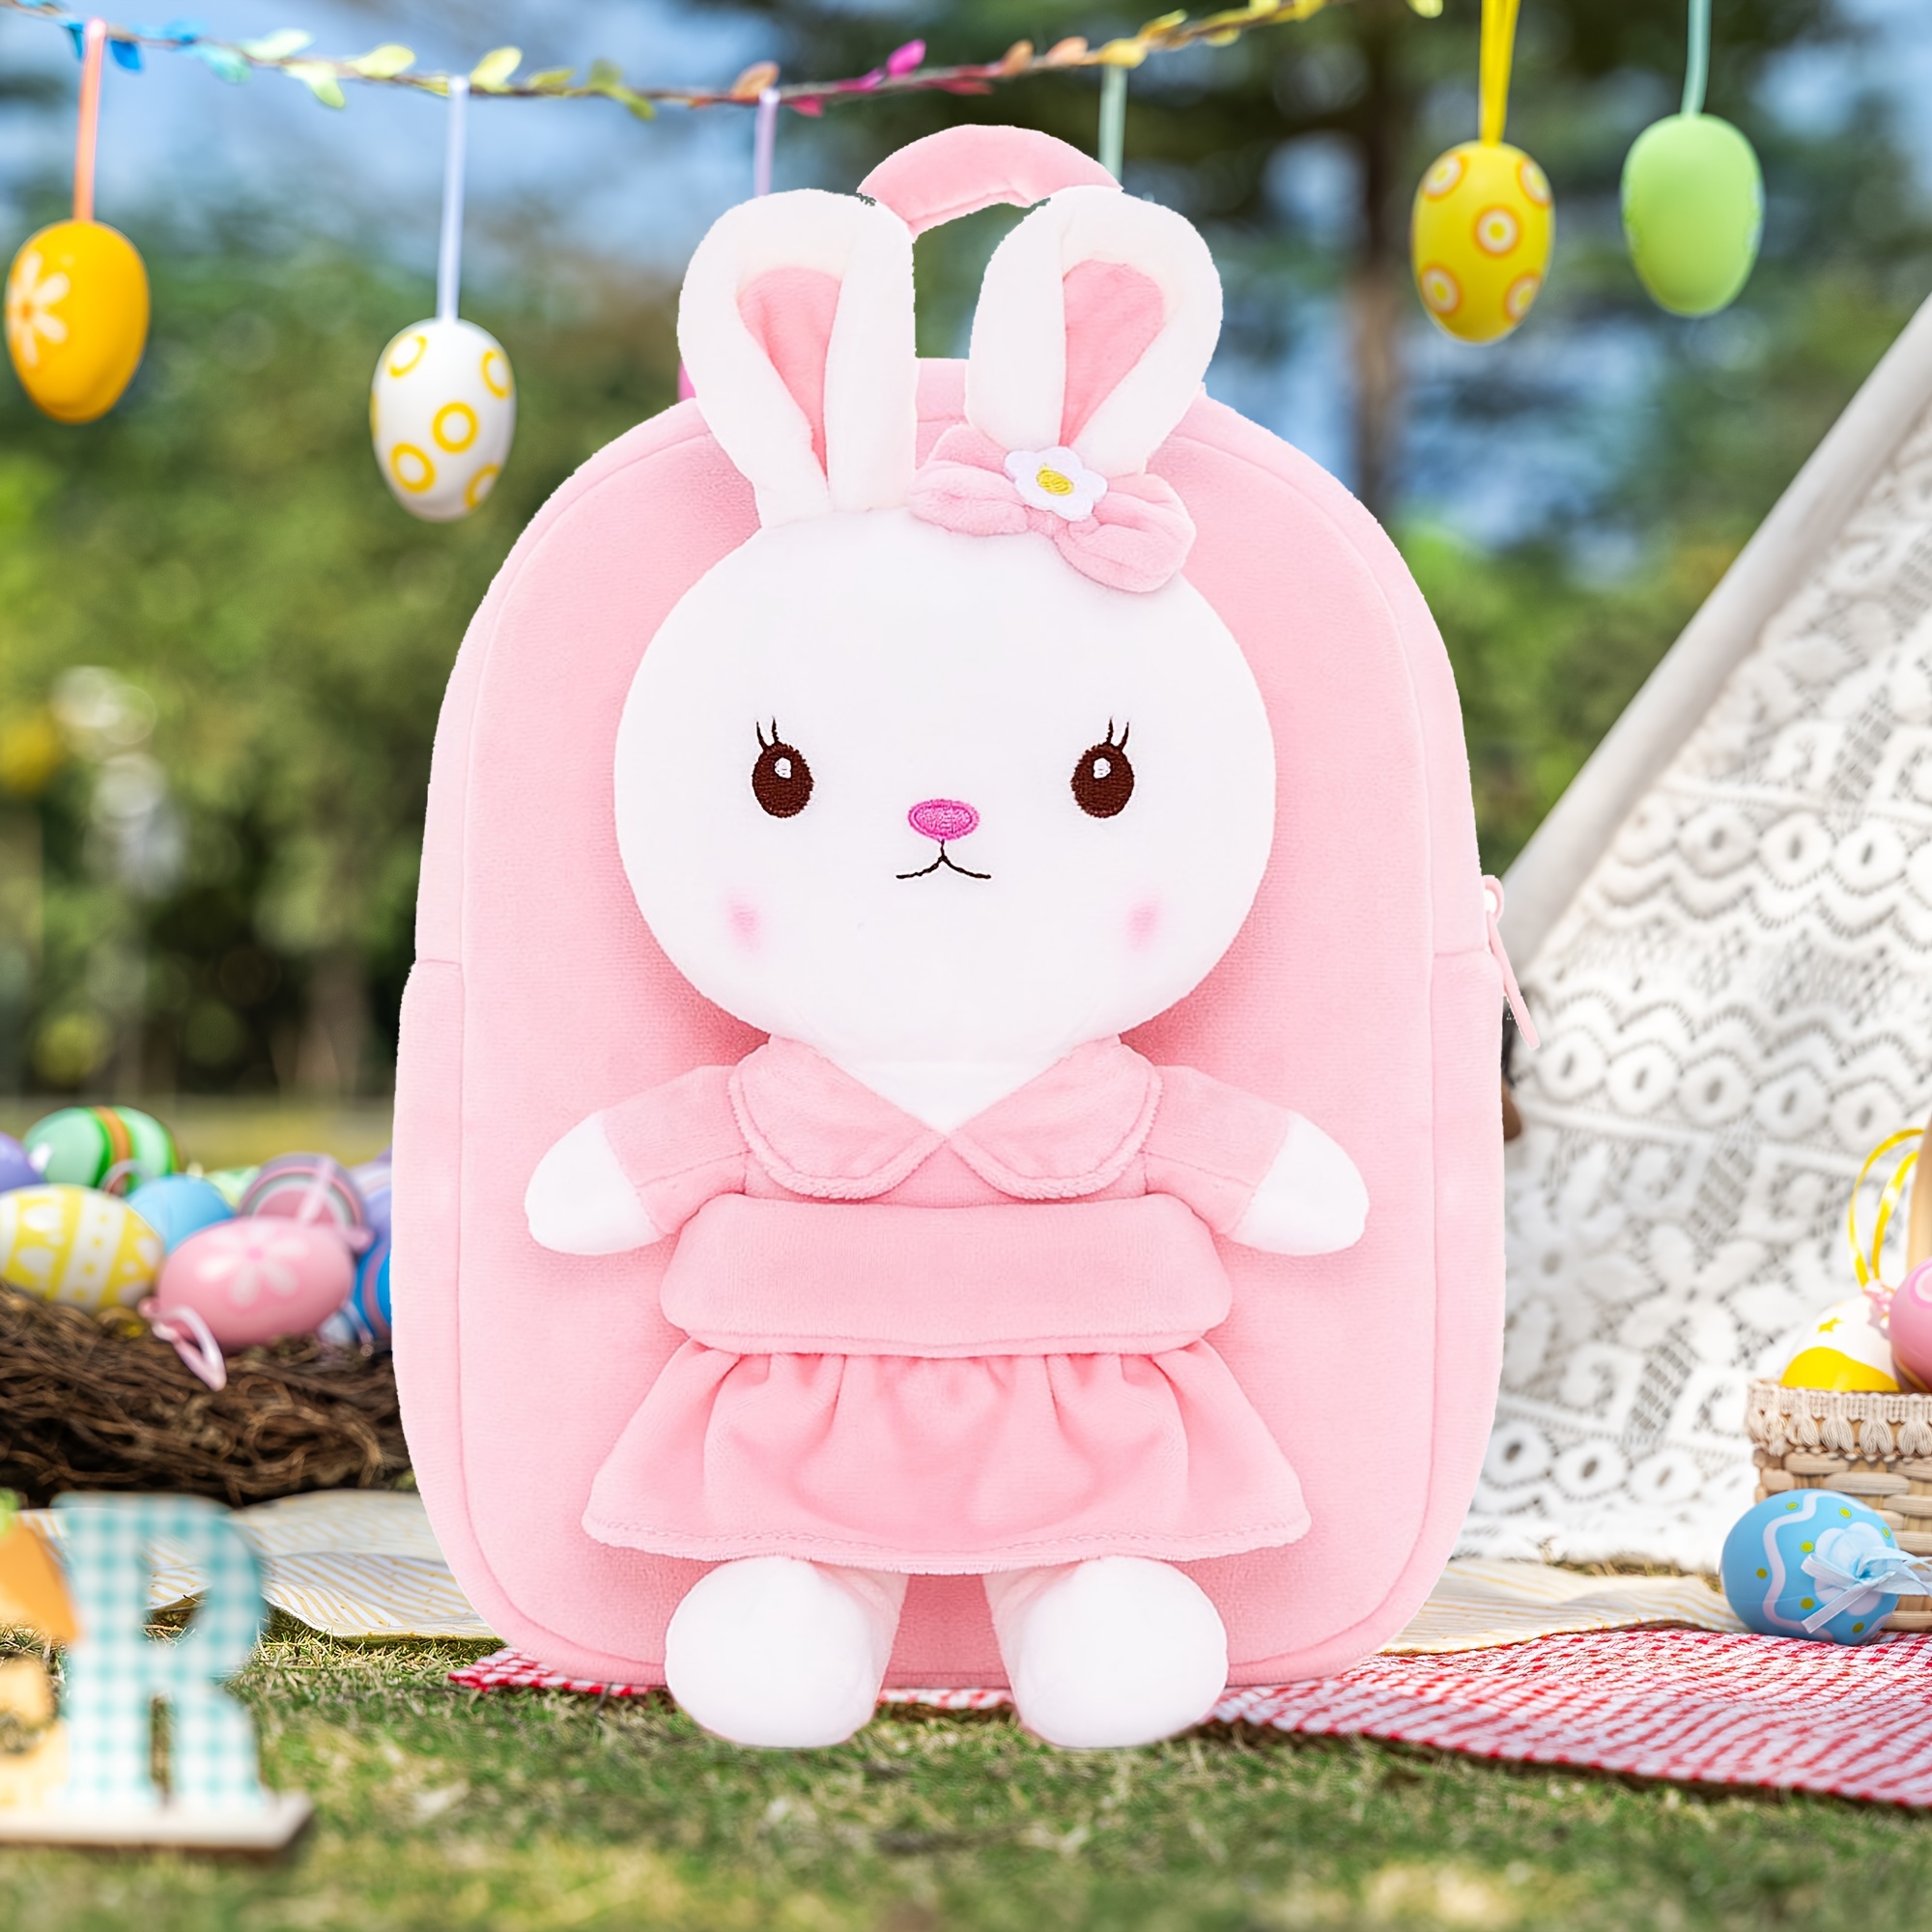 gloveleya easter bunny toy stuffed animal rabbit toys with backpack pink 9